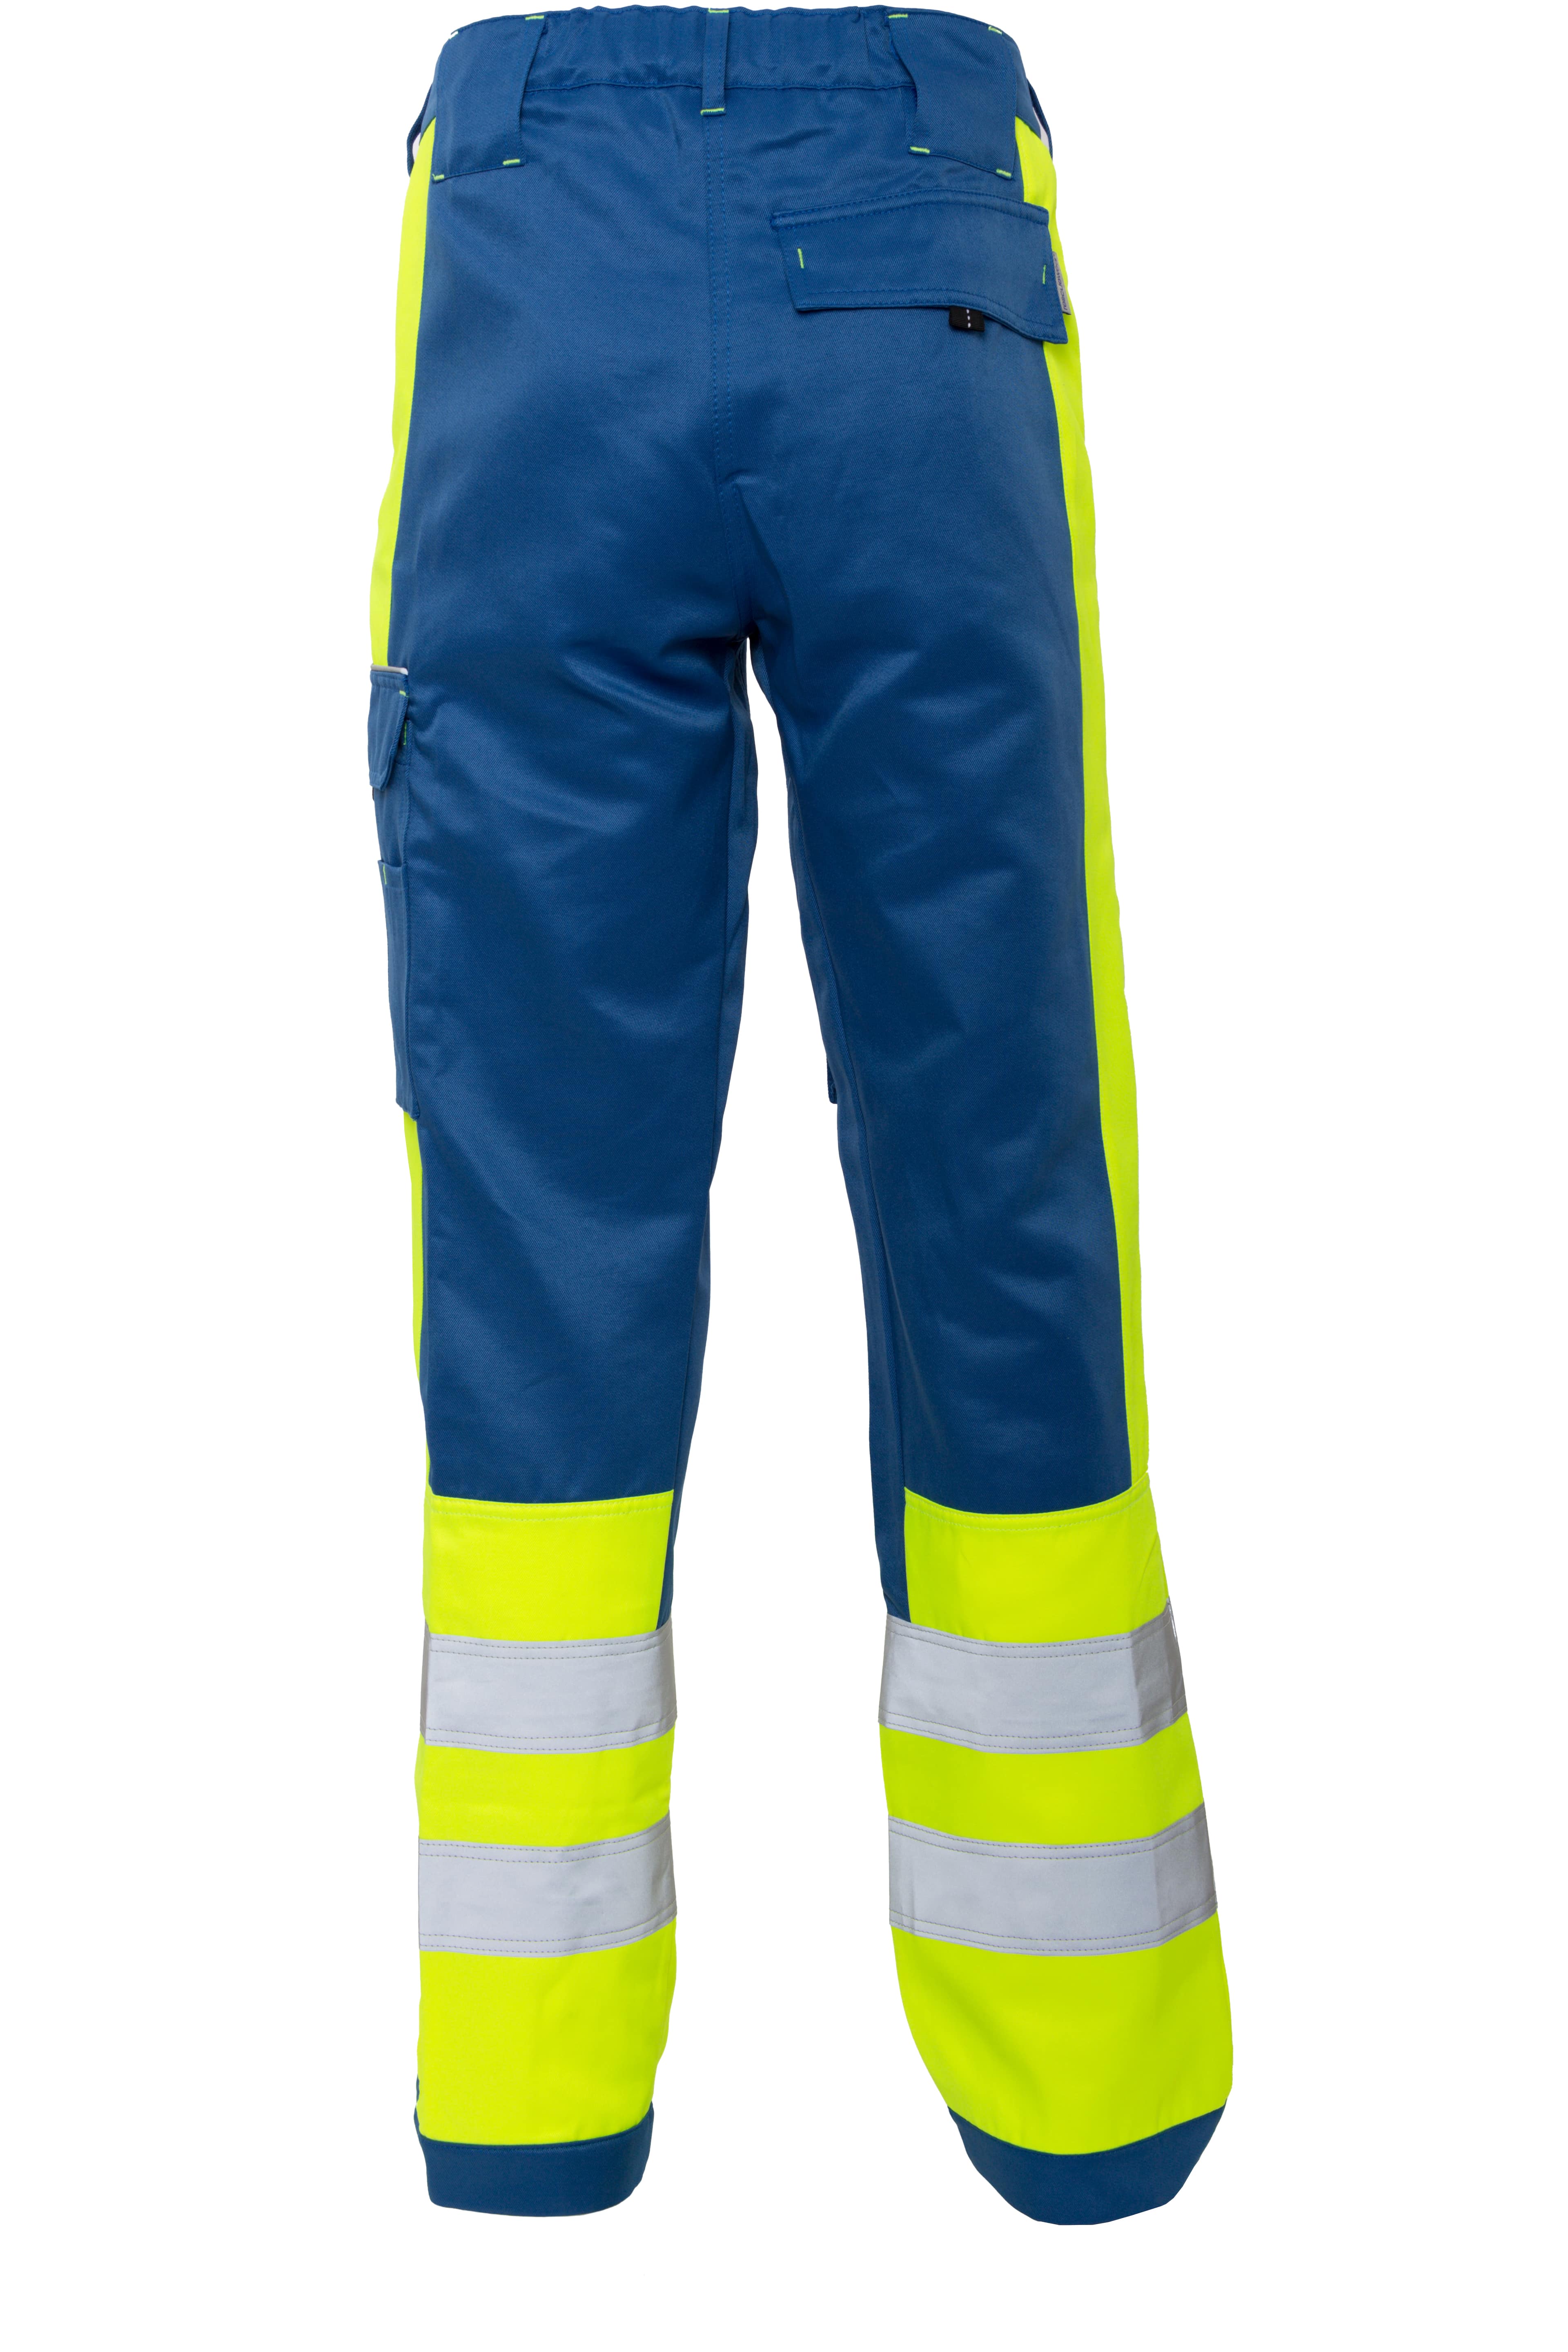 Rescuewear Unisex Hose Dynamic HiVis Klasse 1 Kobaltblau / Neon Gelb - 46